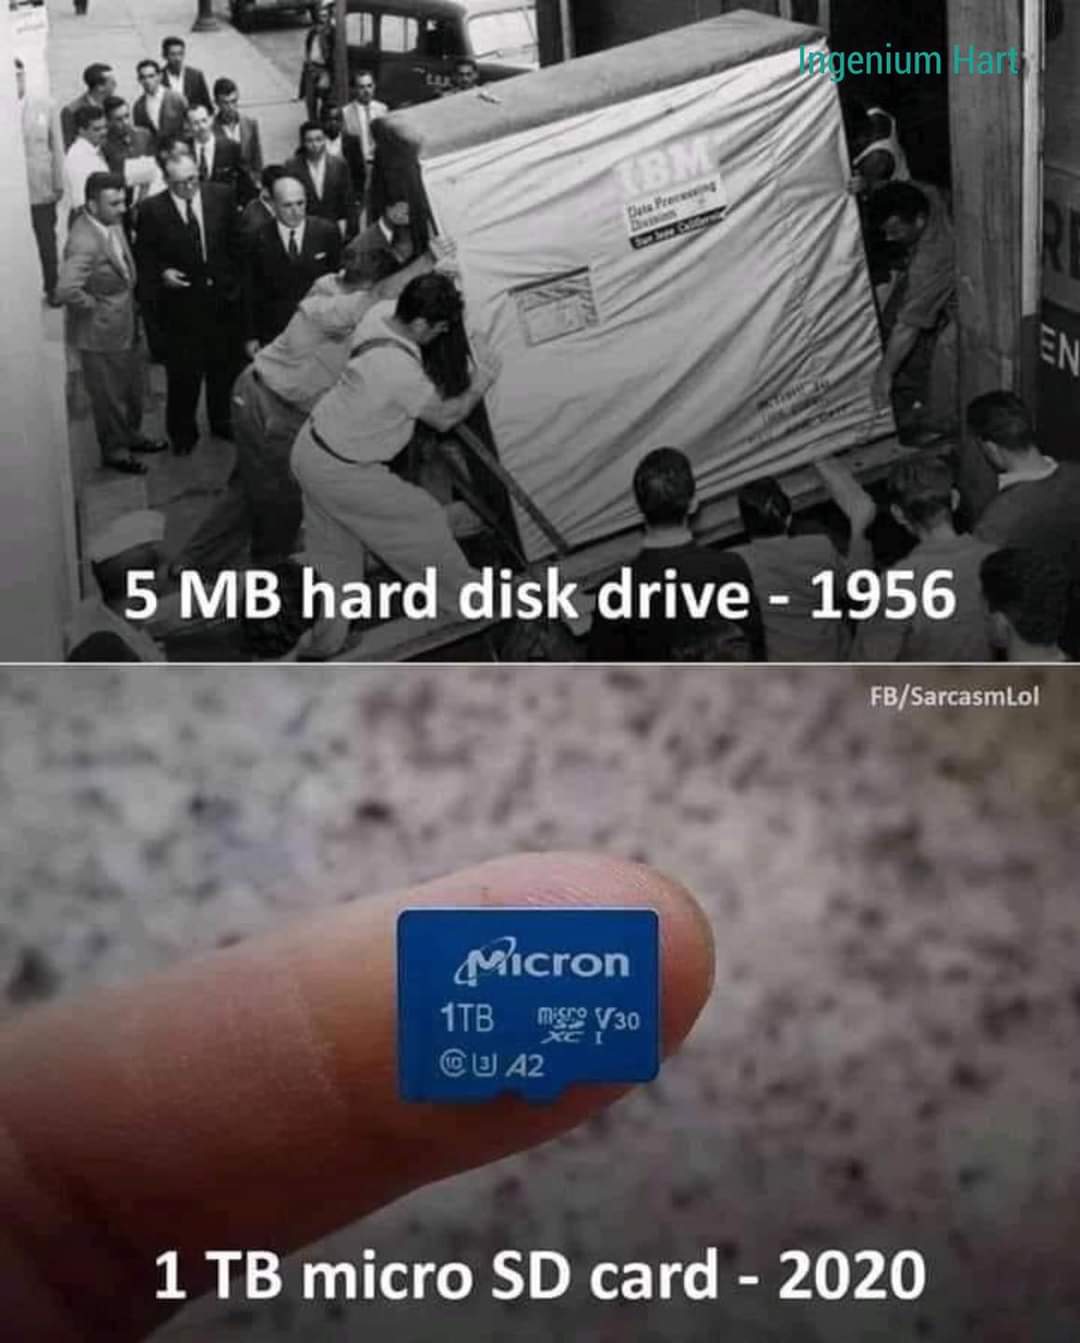 Disco duro de 5 MB en el año 1956 (arriba) - 1 terabyte de almacenamiento en una memoria SD en el año 2020 (abajo)